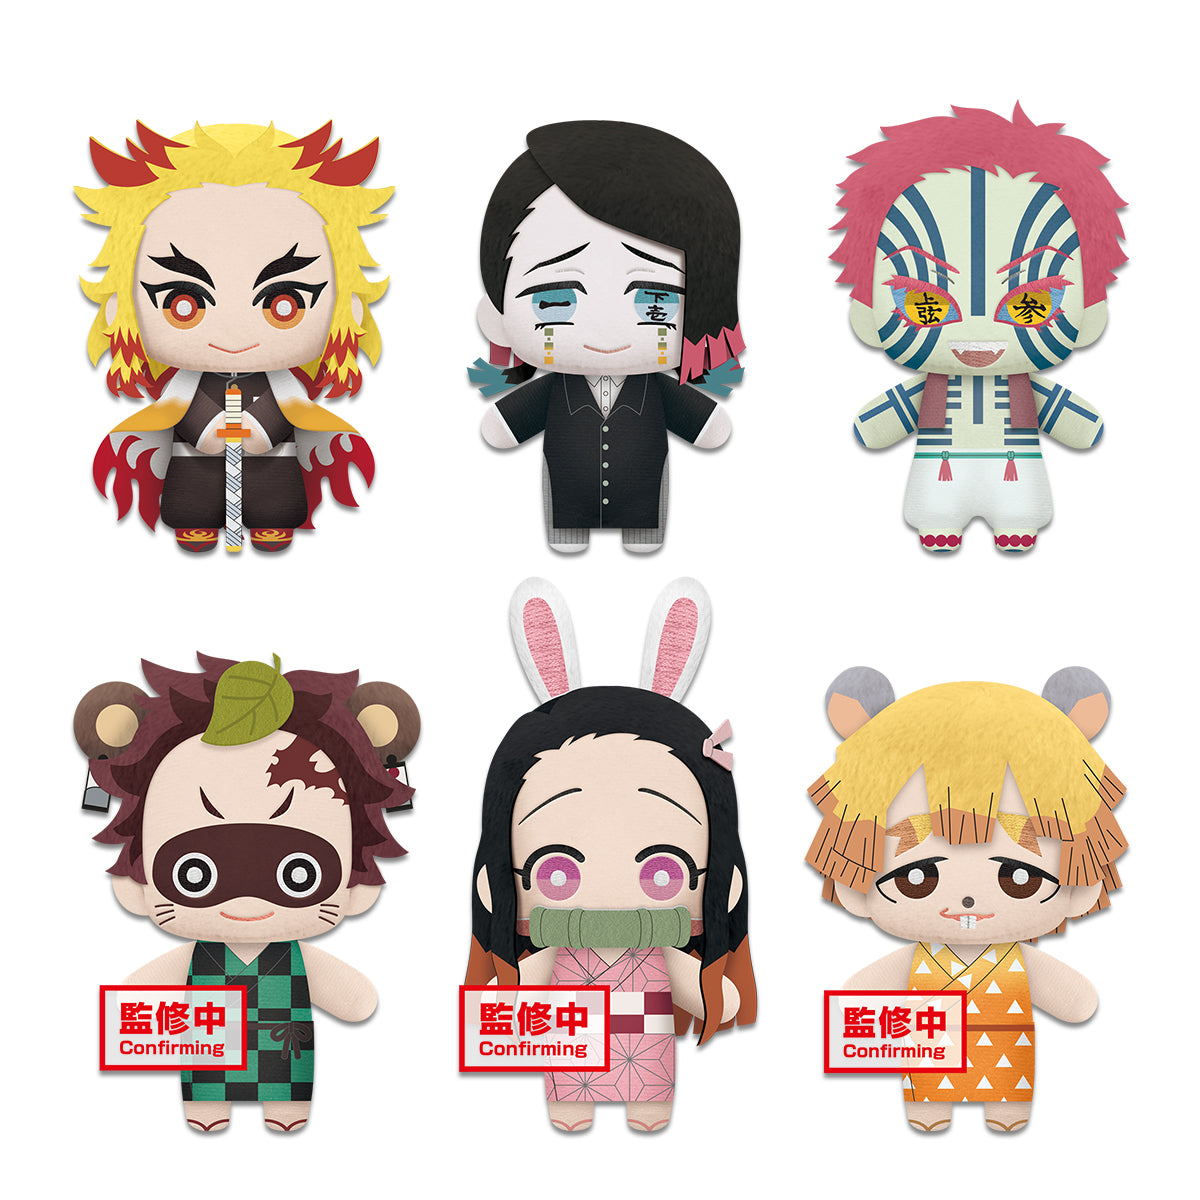 Demon Slayer Plush. Possible characters Tanjiro Kamado, Nezuko Kamado, Zenitsu Agatsuma, Kyojuro Rengoku, Enmu, Akaza.